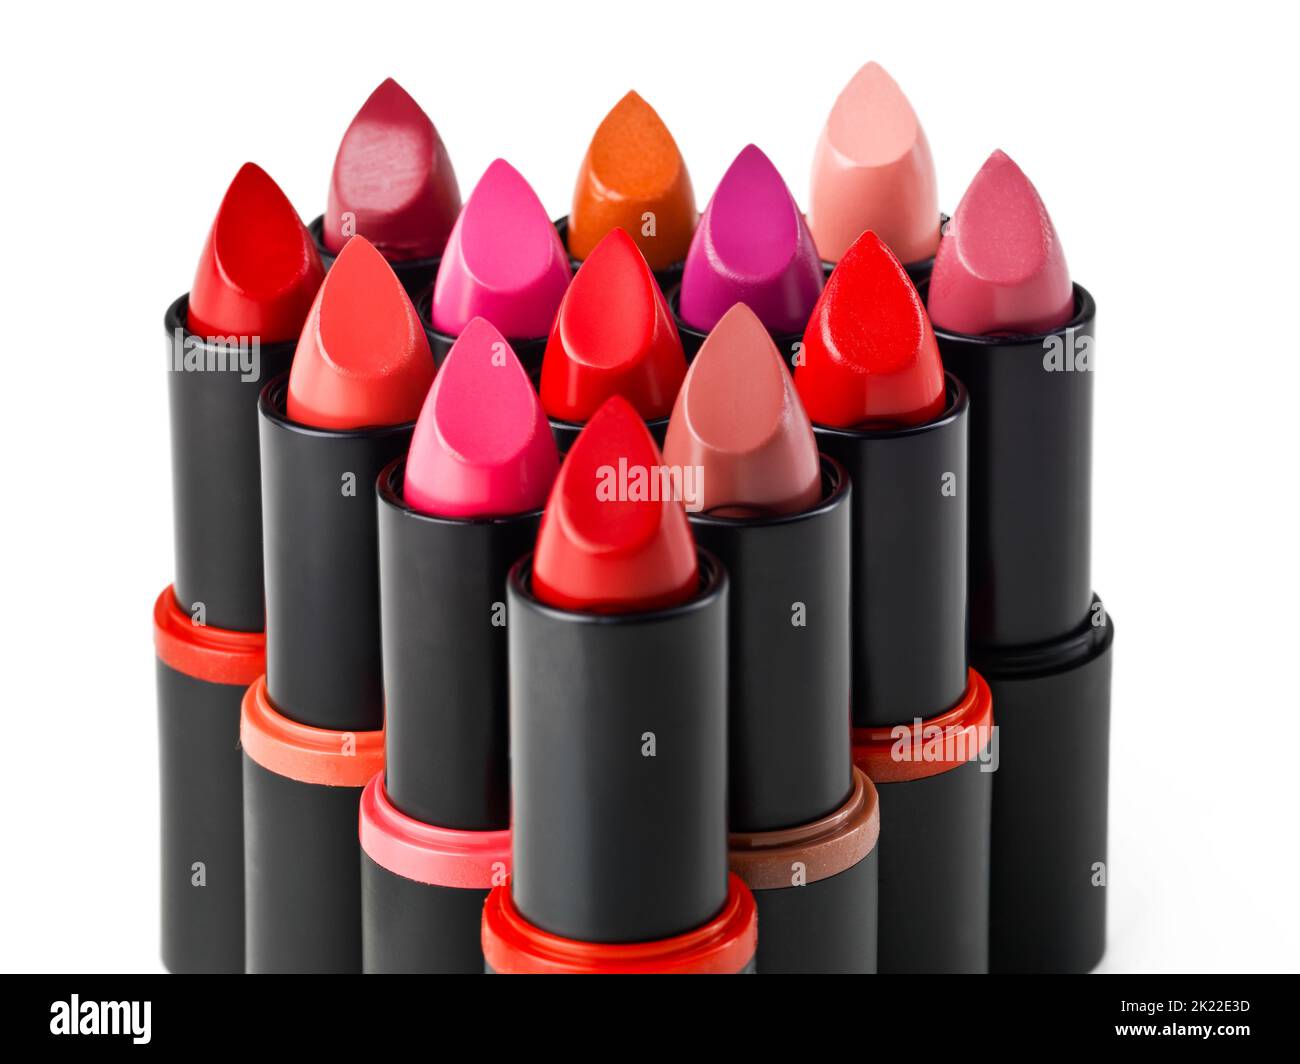 Das sind die besten Farben der Saison. Eine isolierte Aufnahme von verschiedenen farbigen Lippenstiften. Stockfoto